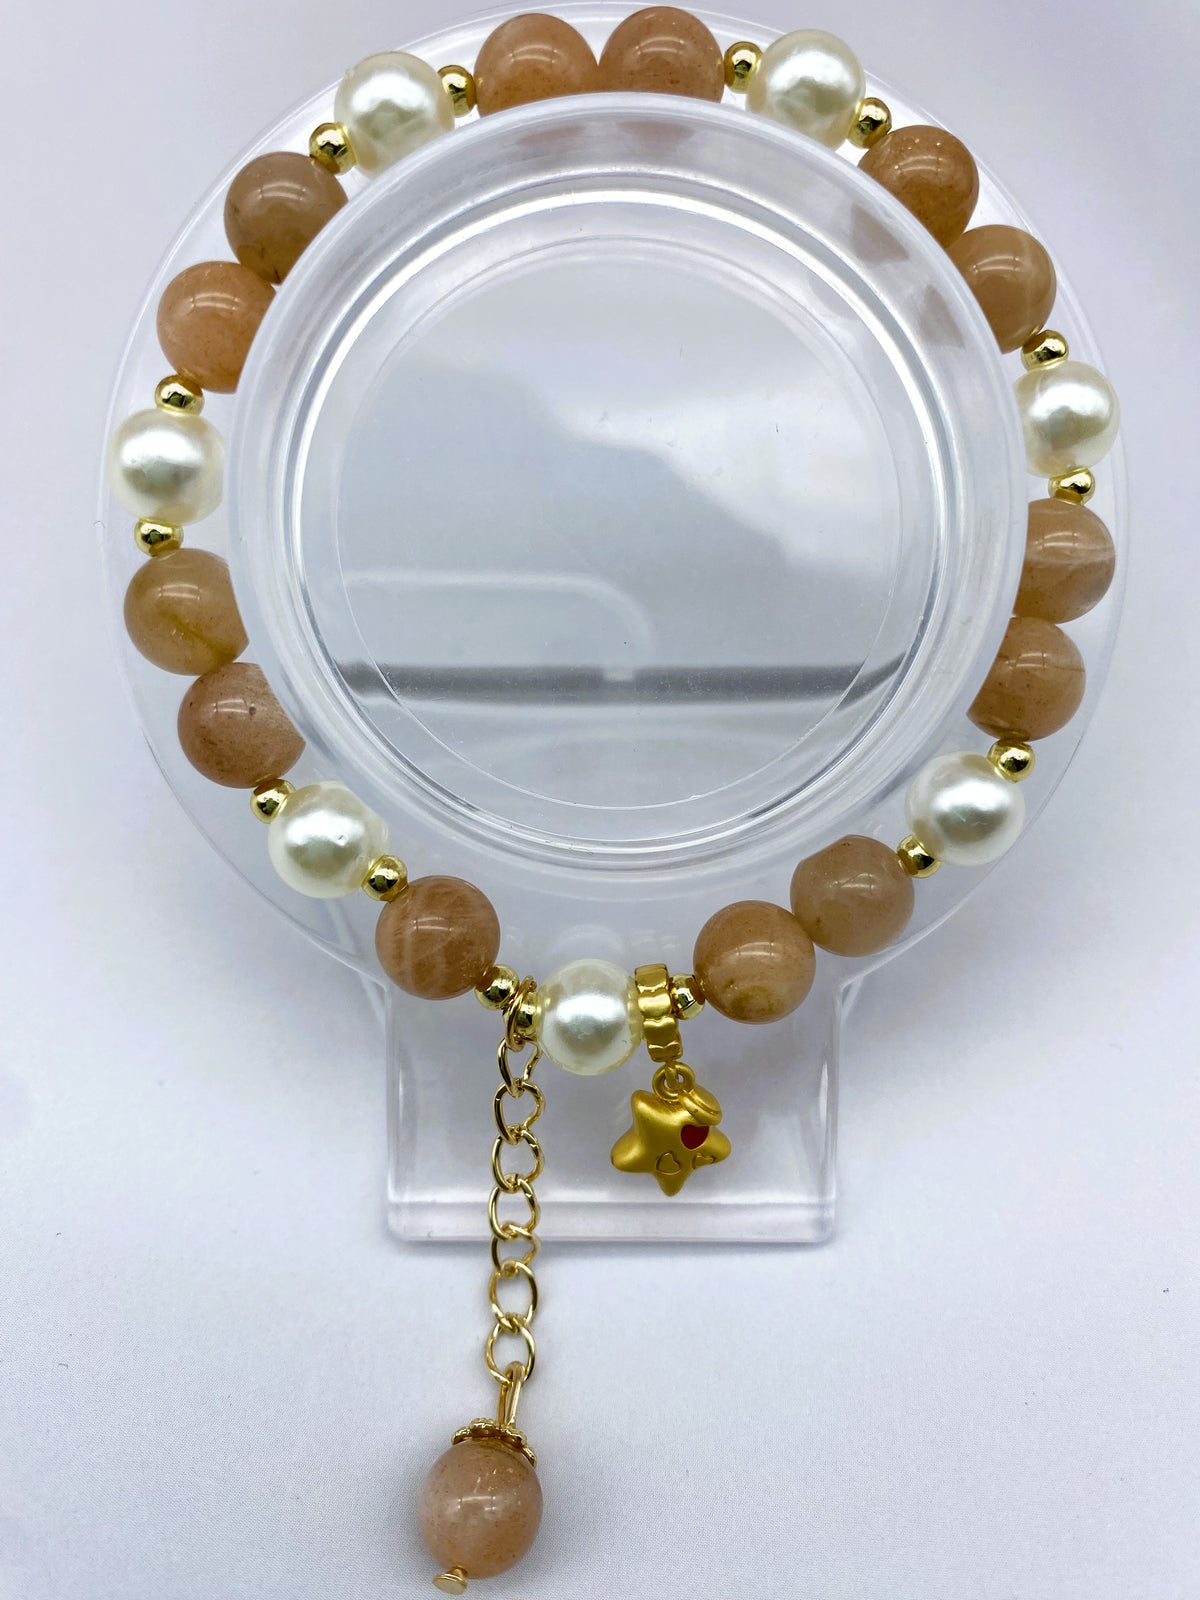 Special Design Sunstone Bracelet Collection 8mm Adjustable Natural Gemstone Bracelet Healing Crystal Energy Quartz Chakras